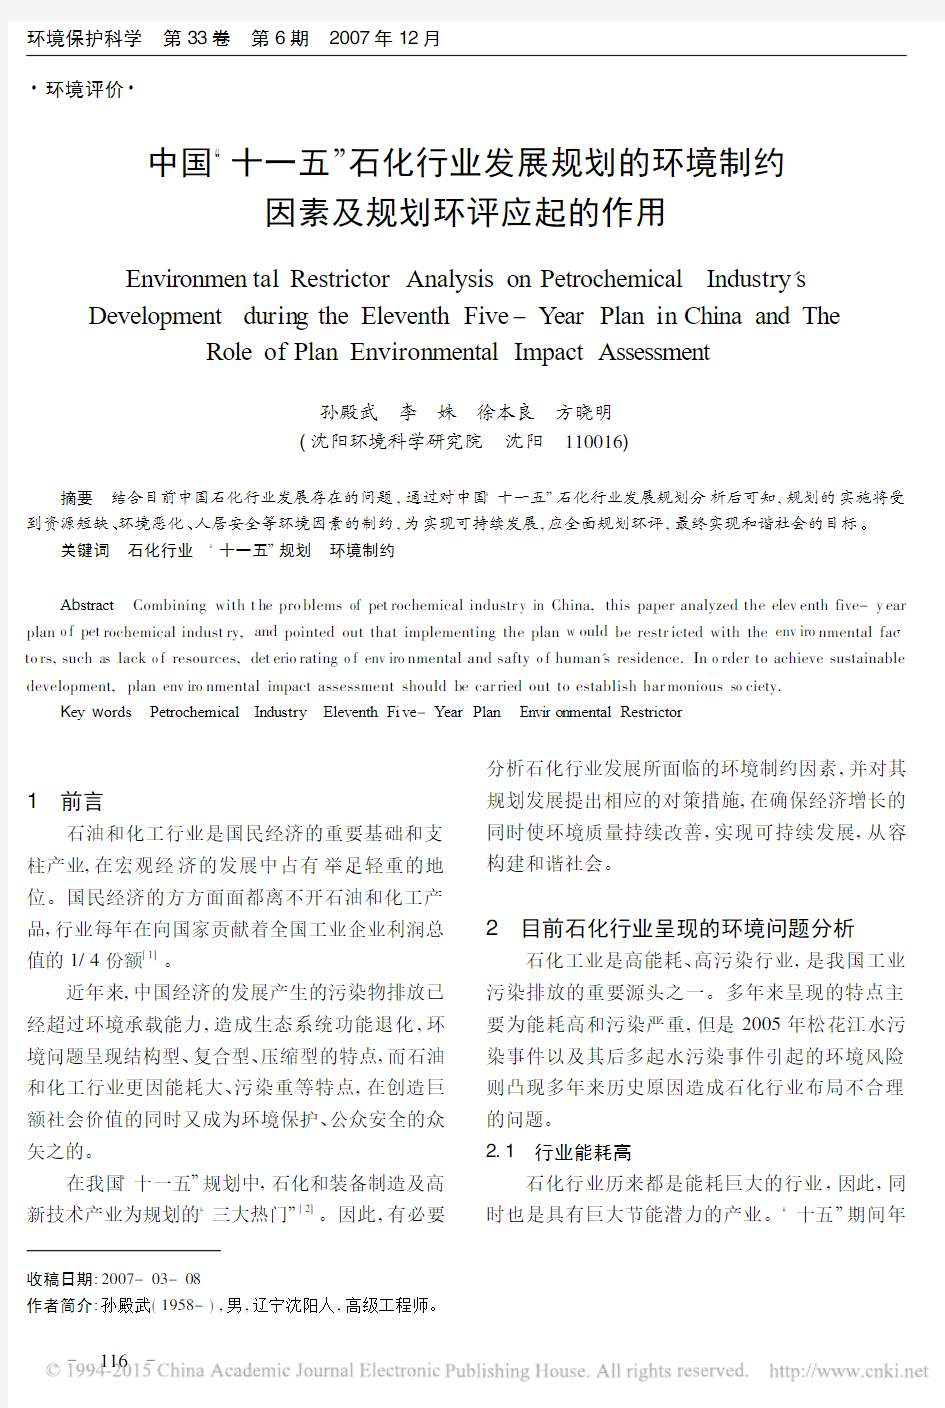 中国_十一五_石化行业发展规划的环境制约因素及规划环评应起的作用